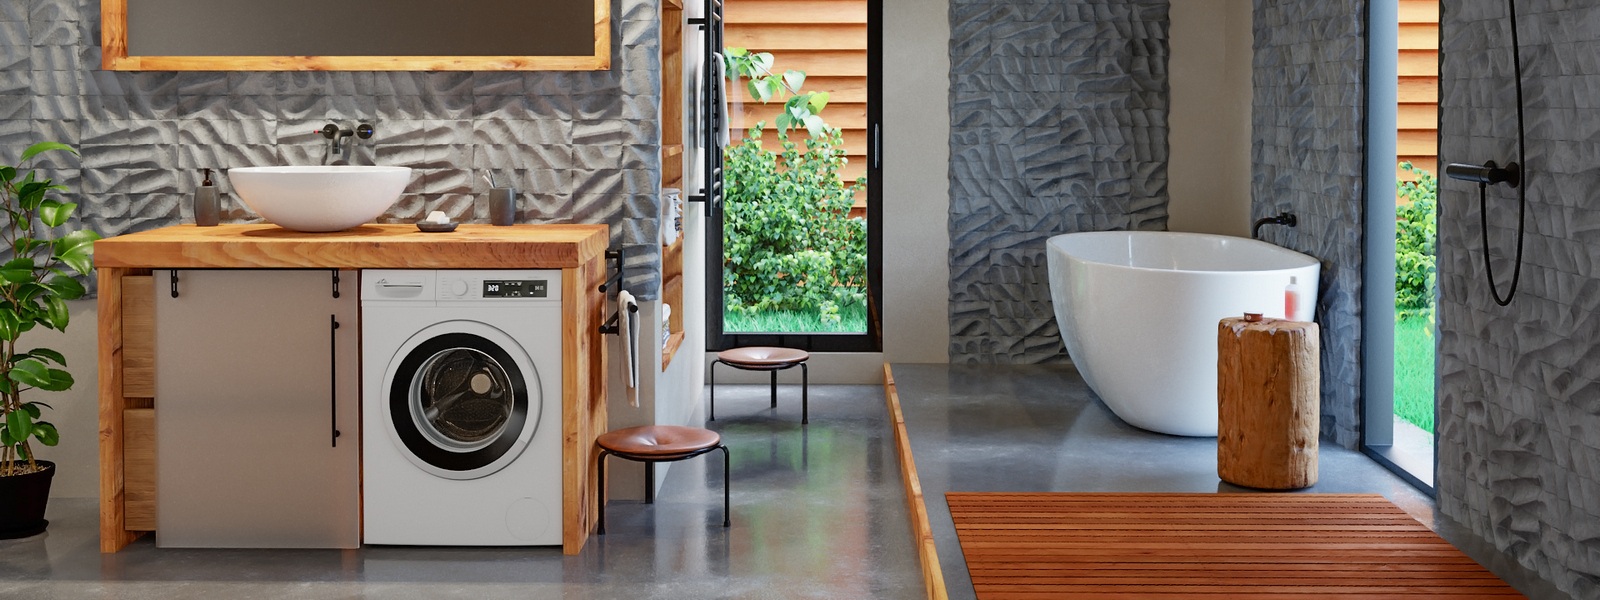 Netrápte sa s praním bielizne: Ako vybrať práčku, ktorá vám uľahčí život?